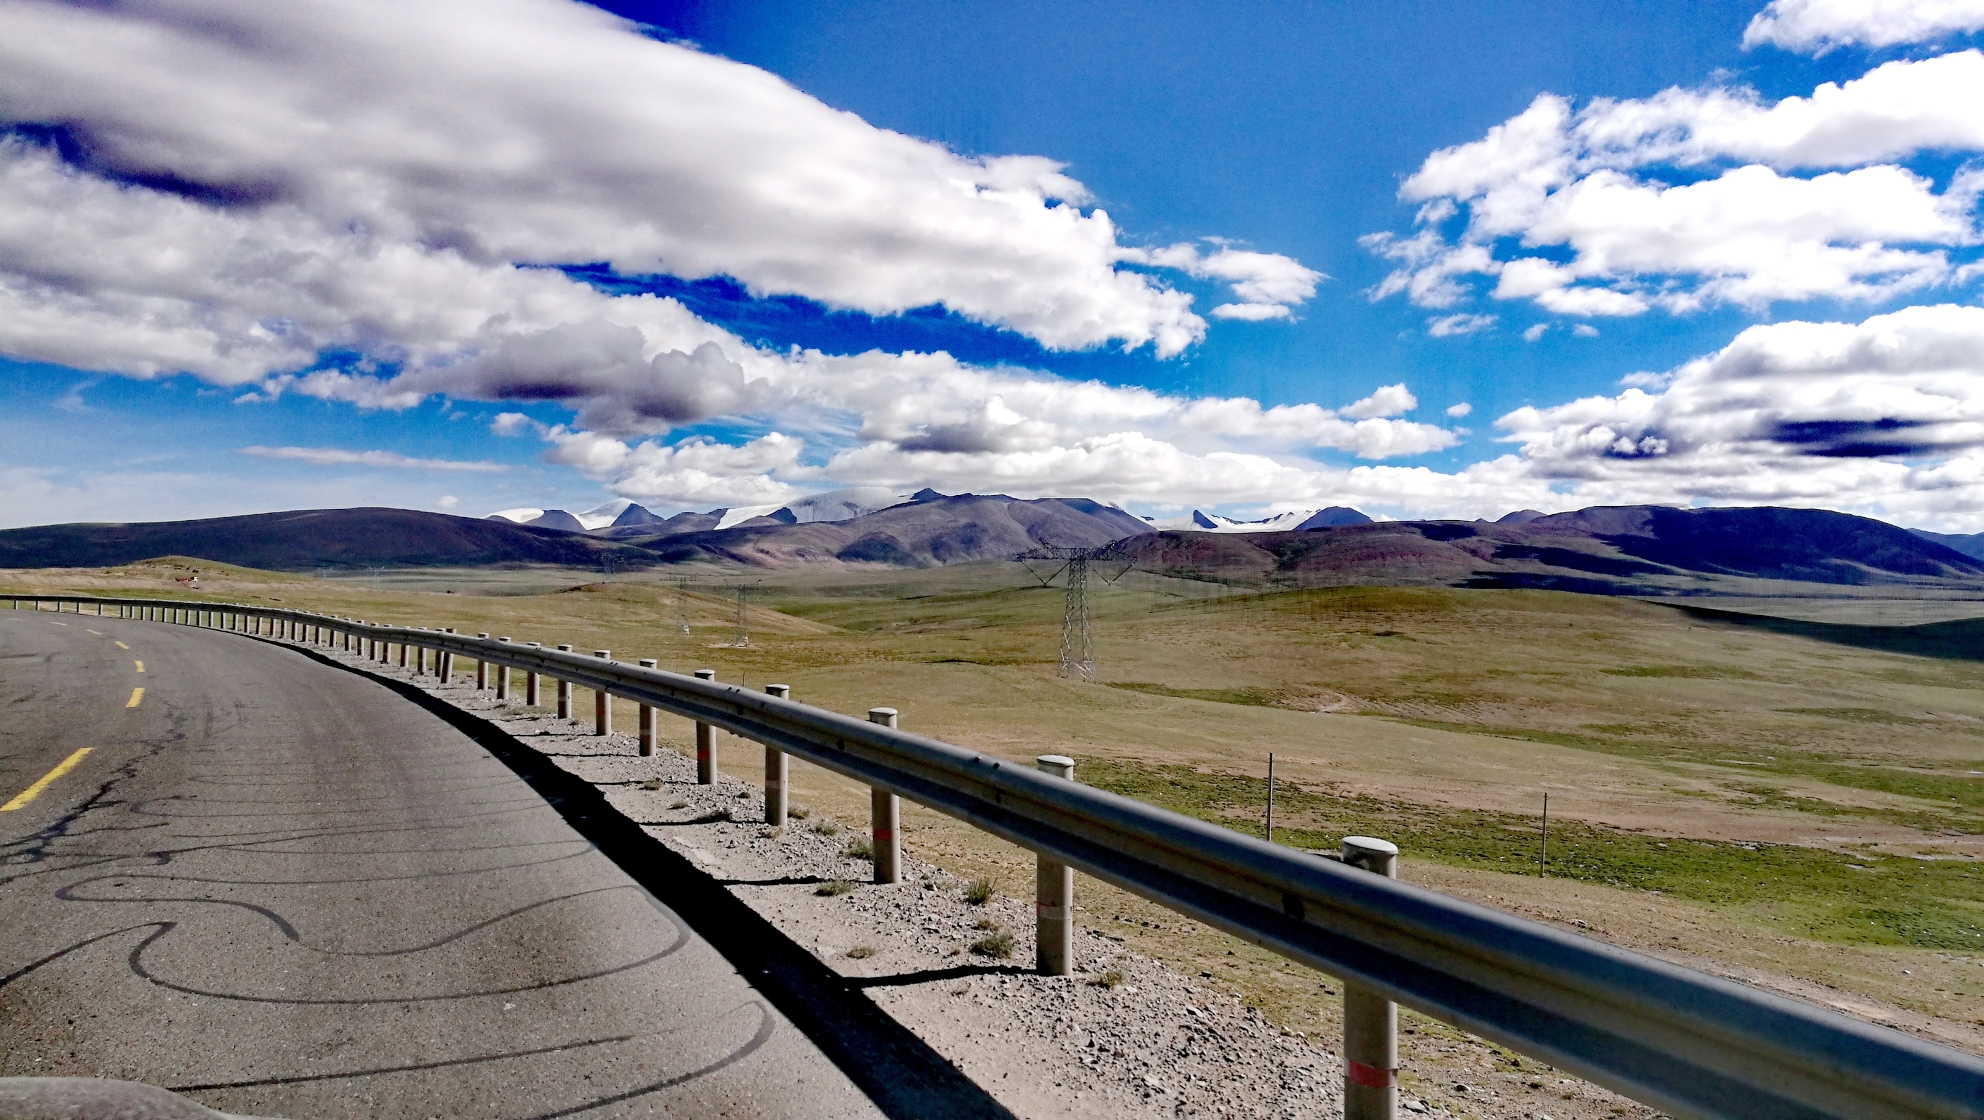 过了妥巨拉山口便是青藏线上最著名的唐古拉山口了.